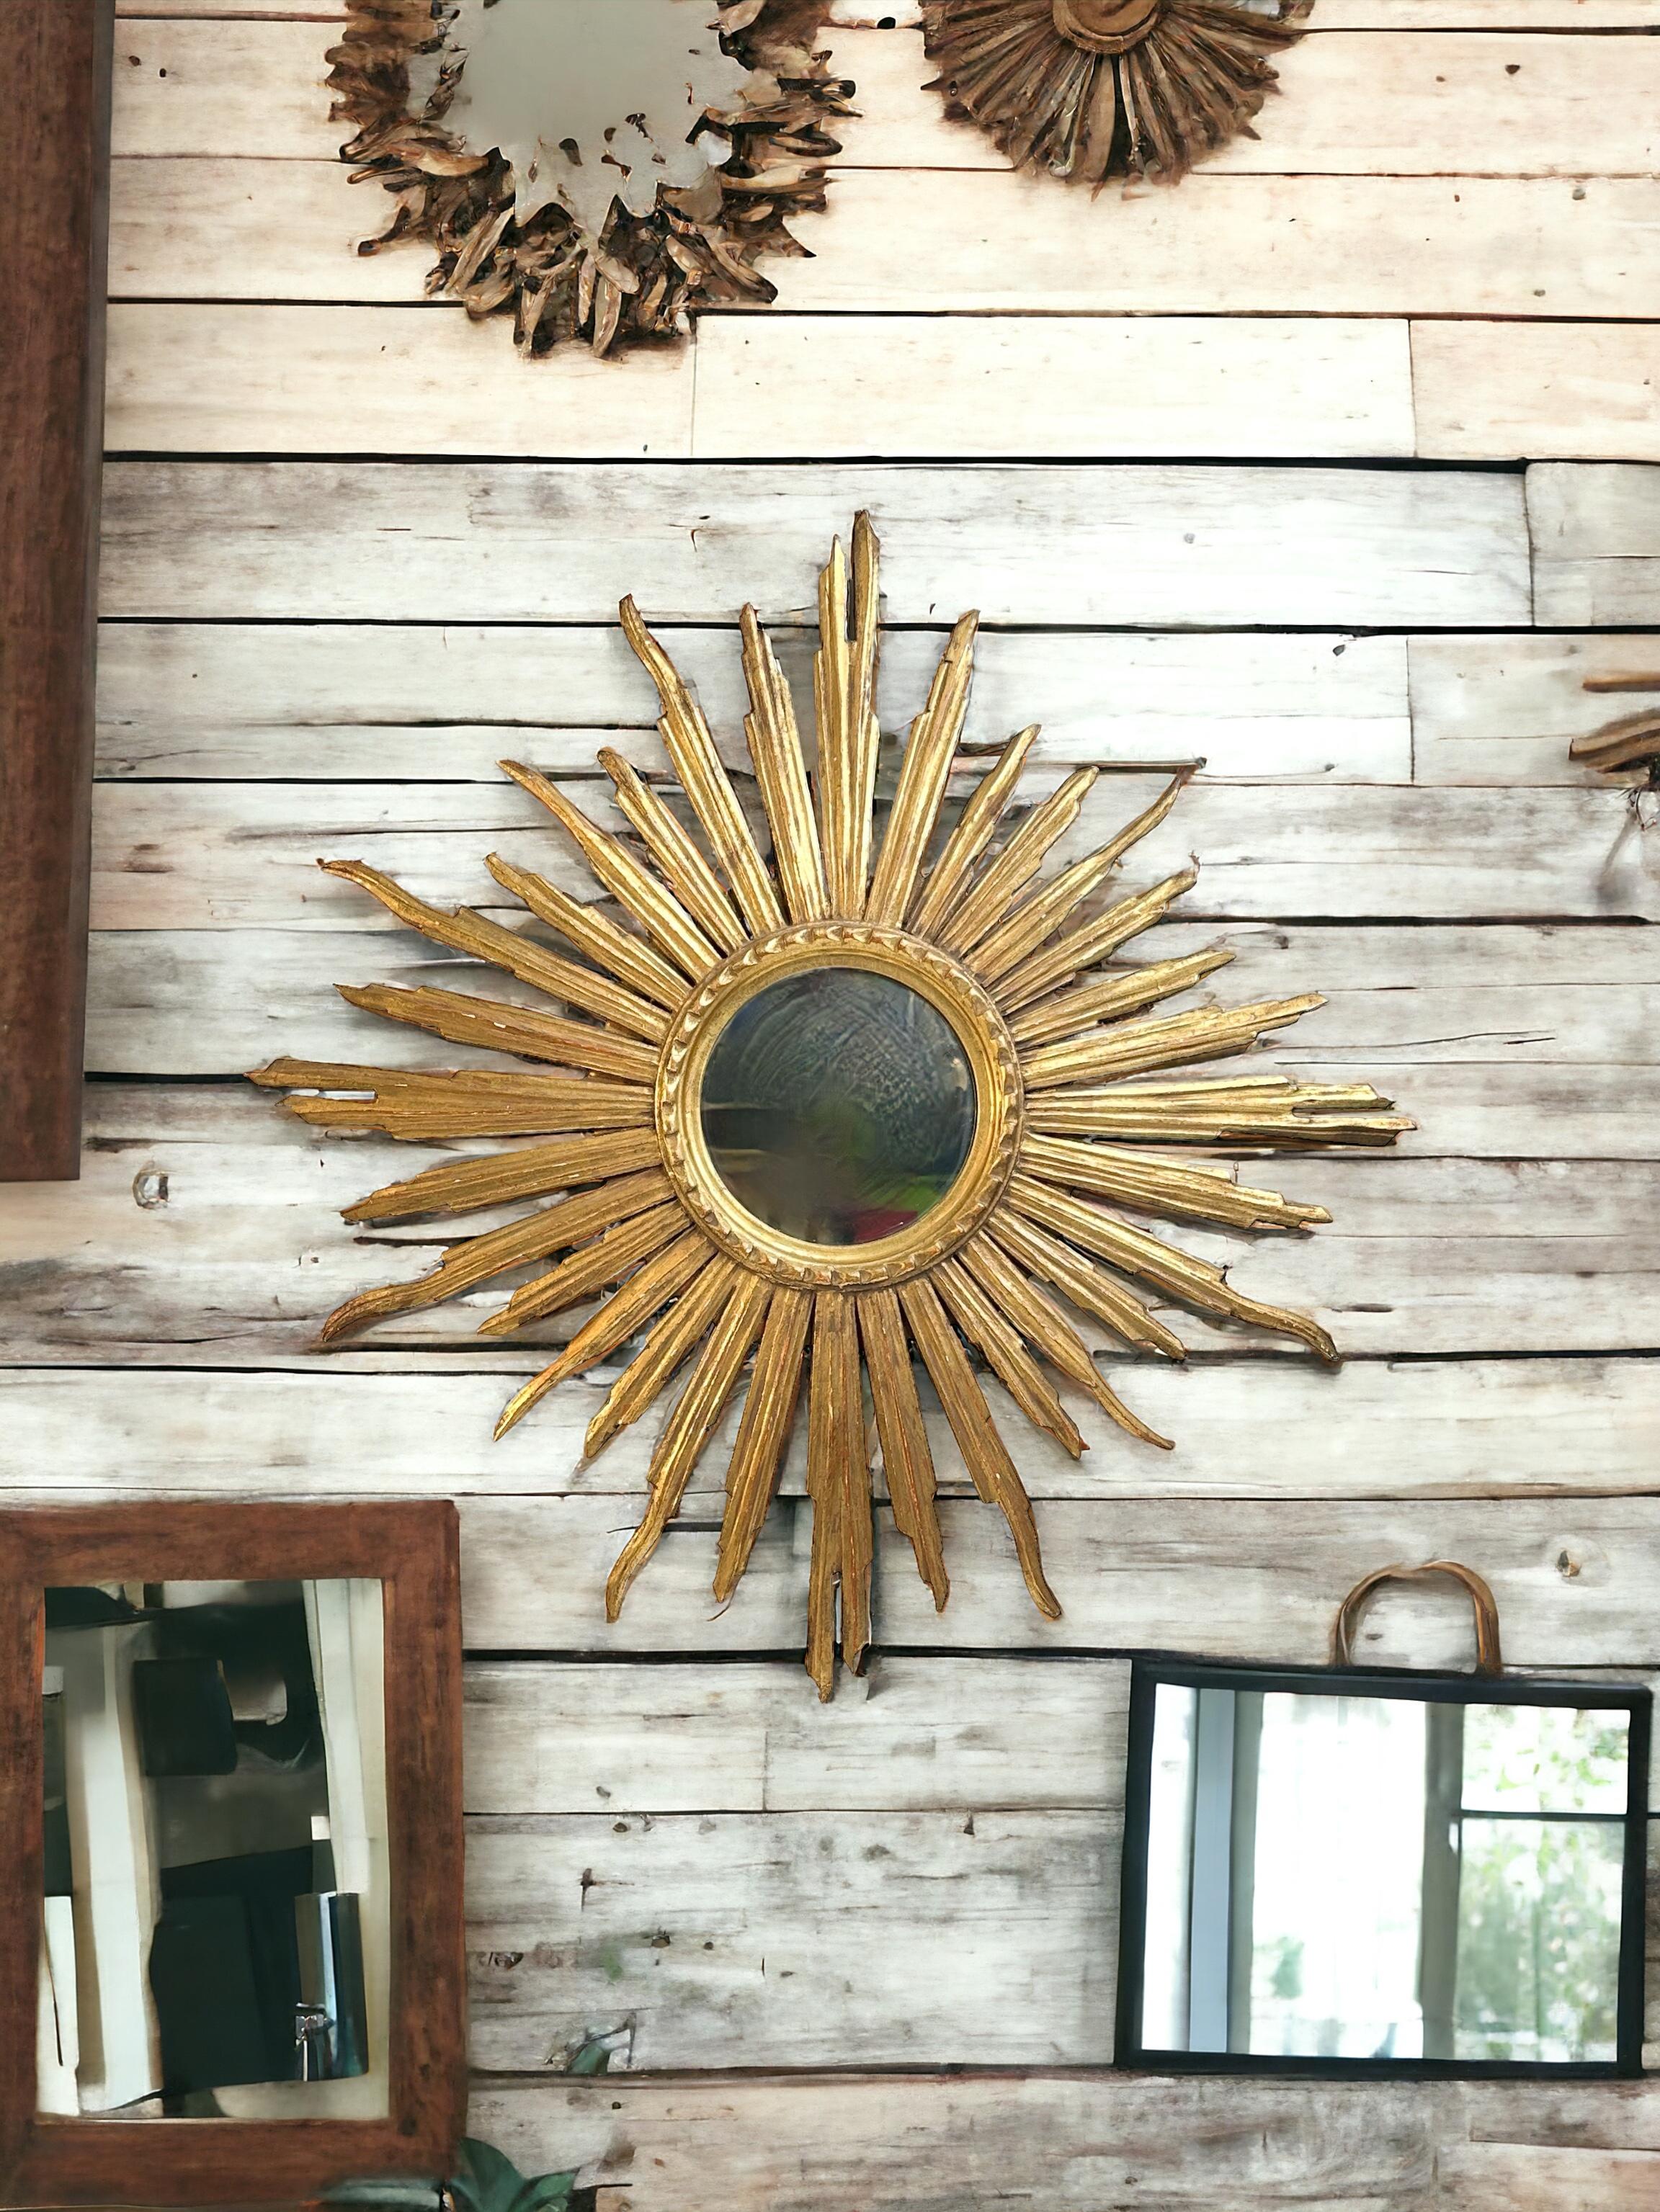 Un magnifique miroir en forme de soleil ou d'étoile. Fabriqué en bois doré. Il mesure environ 30 pouces de diamètre. Le miroir lui-même a un diamètre d'environ 7,13 pouces. Il se trouve à environ 1.5